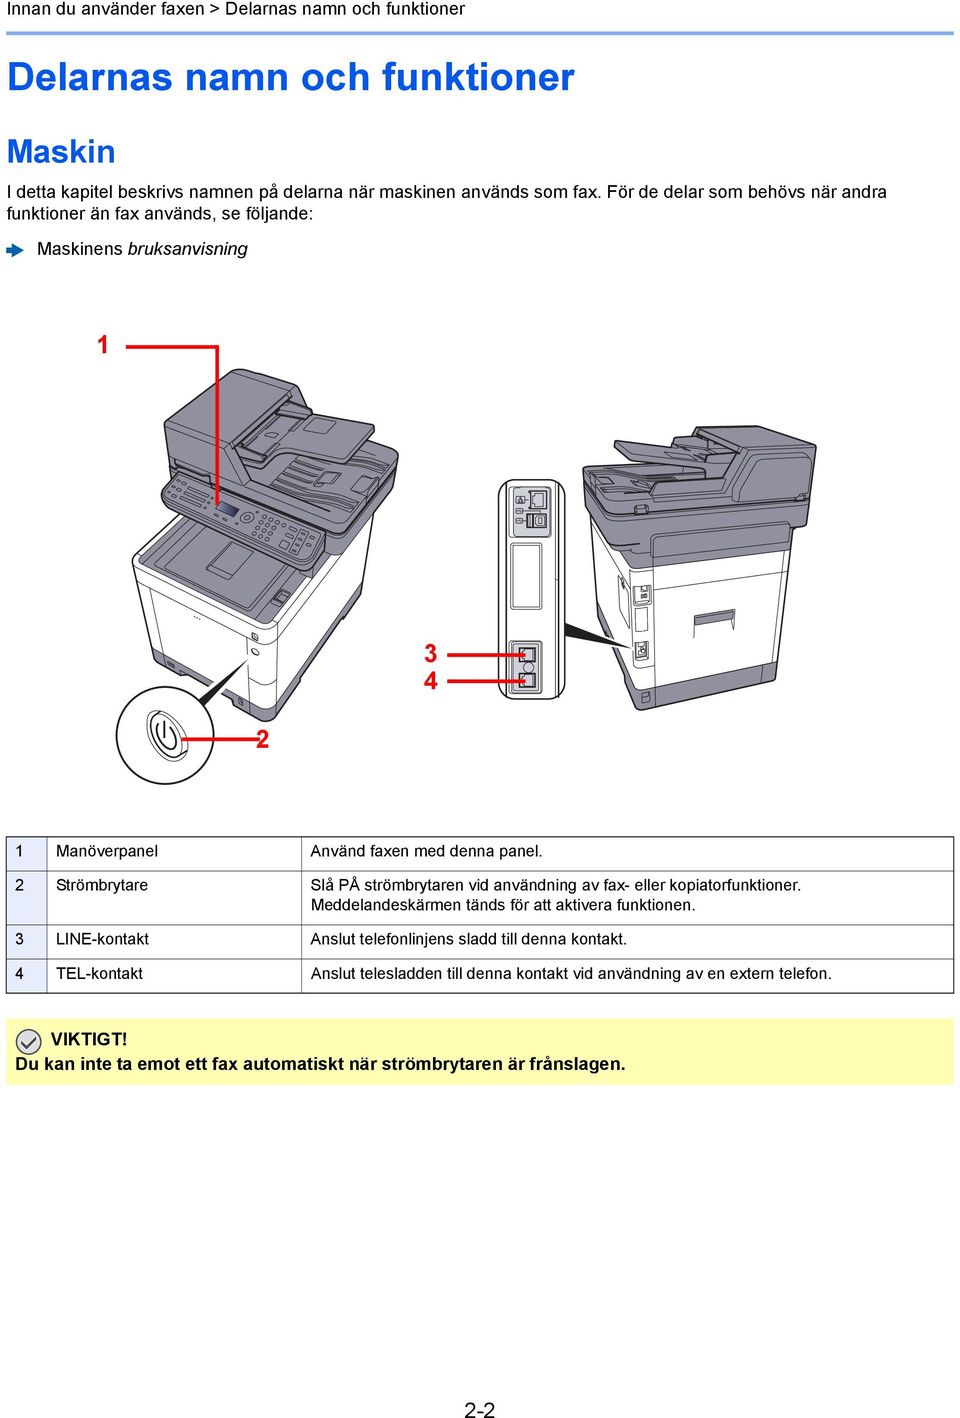 2 Strömbrytare Slå PÅ strömbrytaren vid användning av fax- eller kopiatorfunktioner. Meddelandeskärmen tänds för att aktivera funktionen.